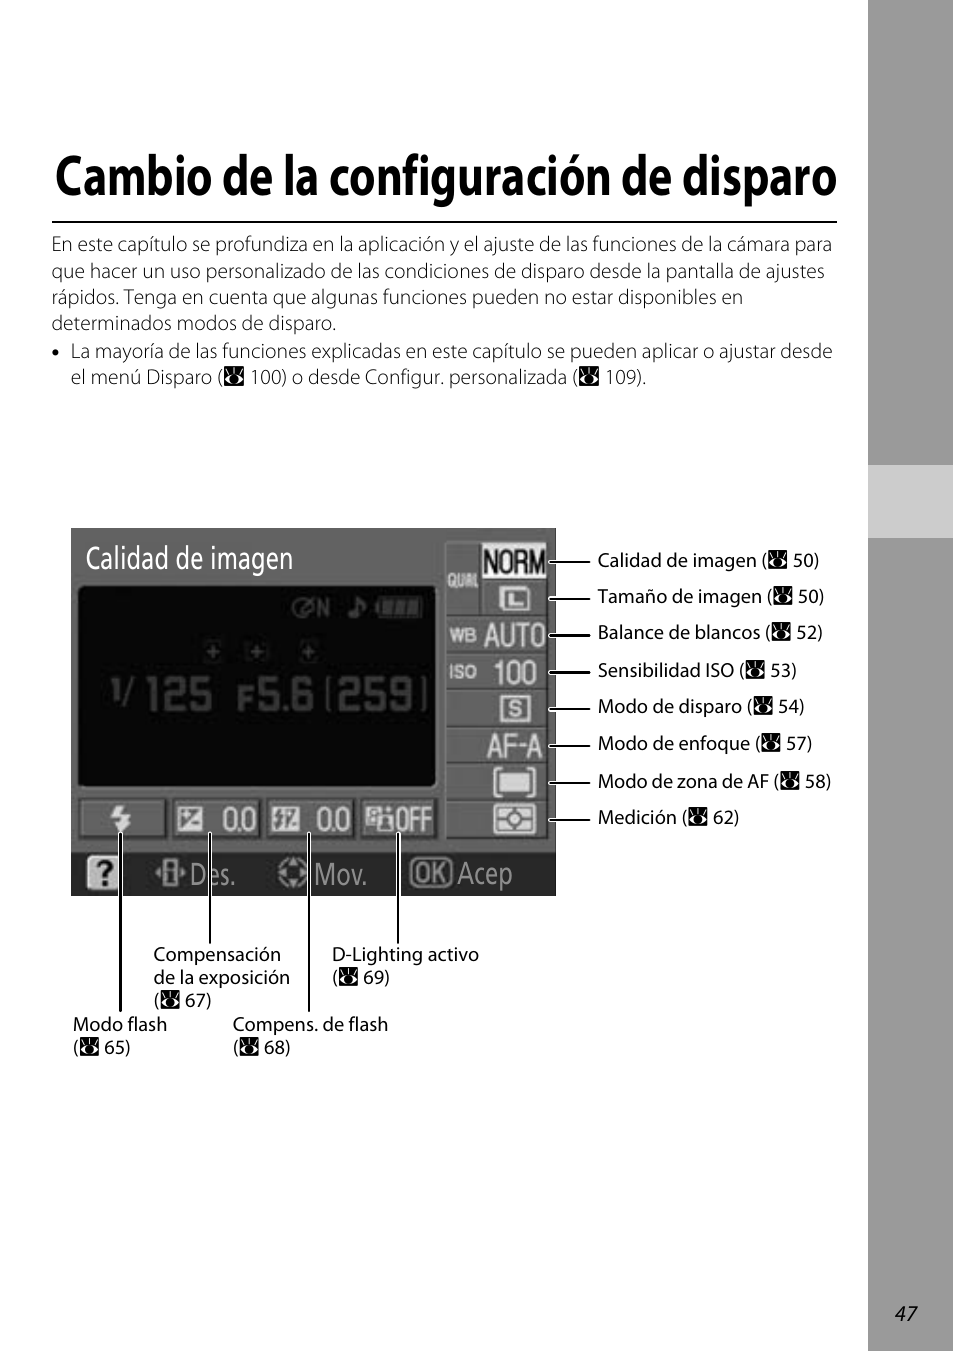 Cambio de la configuración de disparo, Acep calidad de imagen des. mov | Nikon D60 Manual del usuario | Página 59 / 204